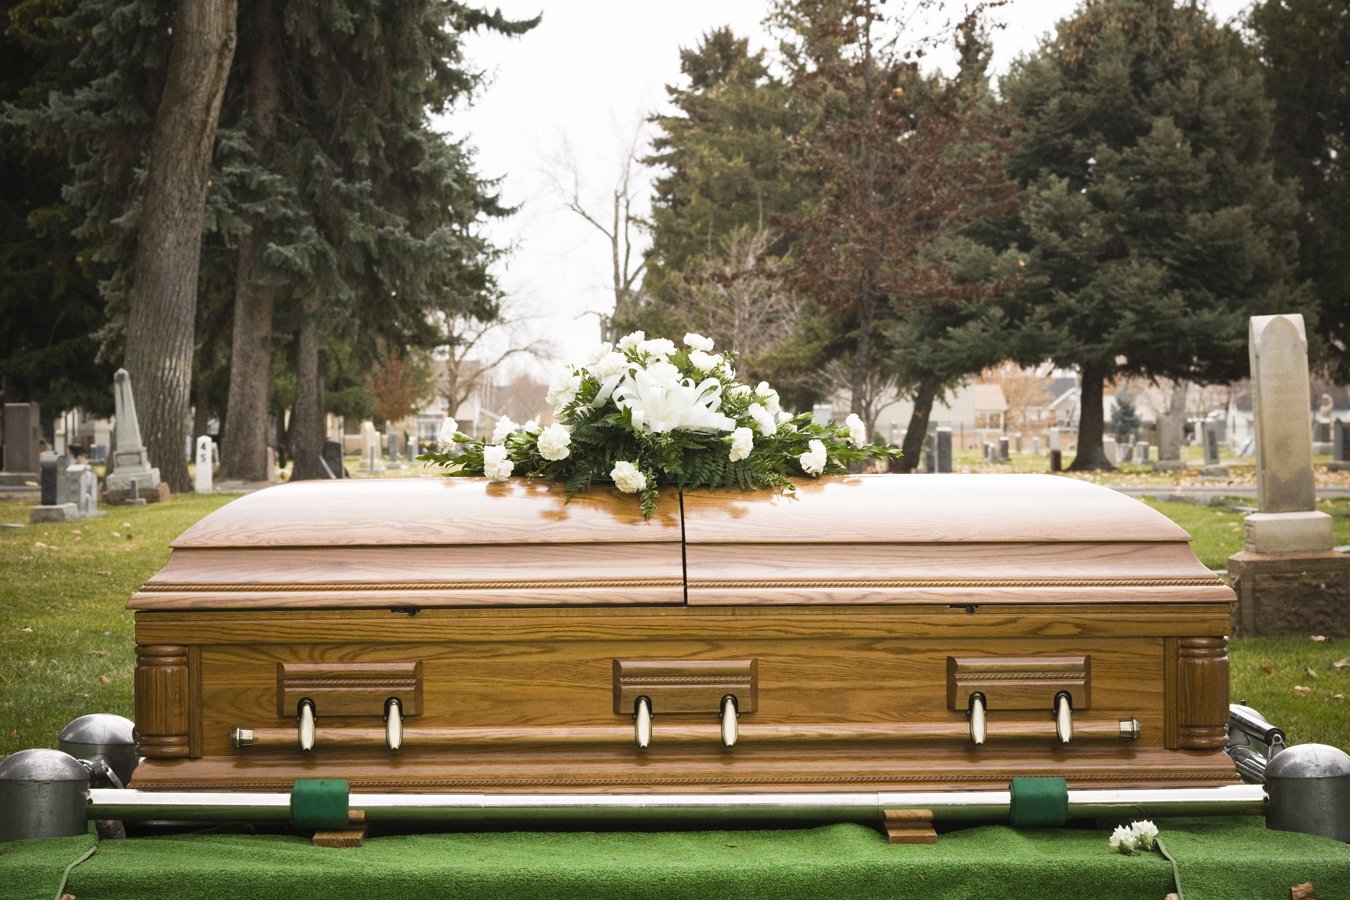 Funerarias, y familias, reflexionan sobre las muertes en la era de COVID-19  | Kaiser Health News